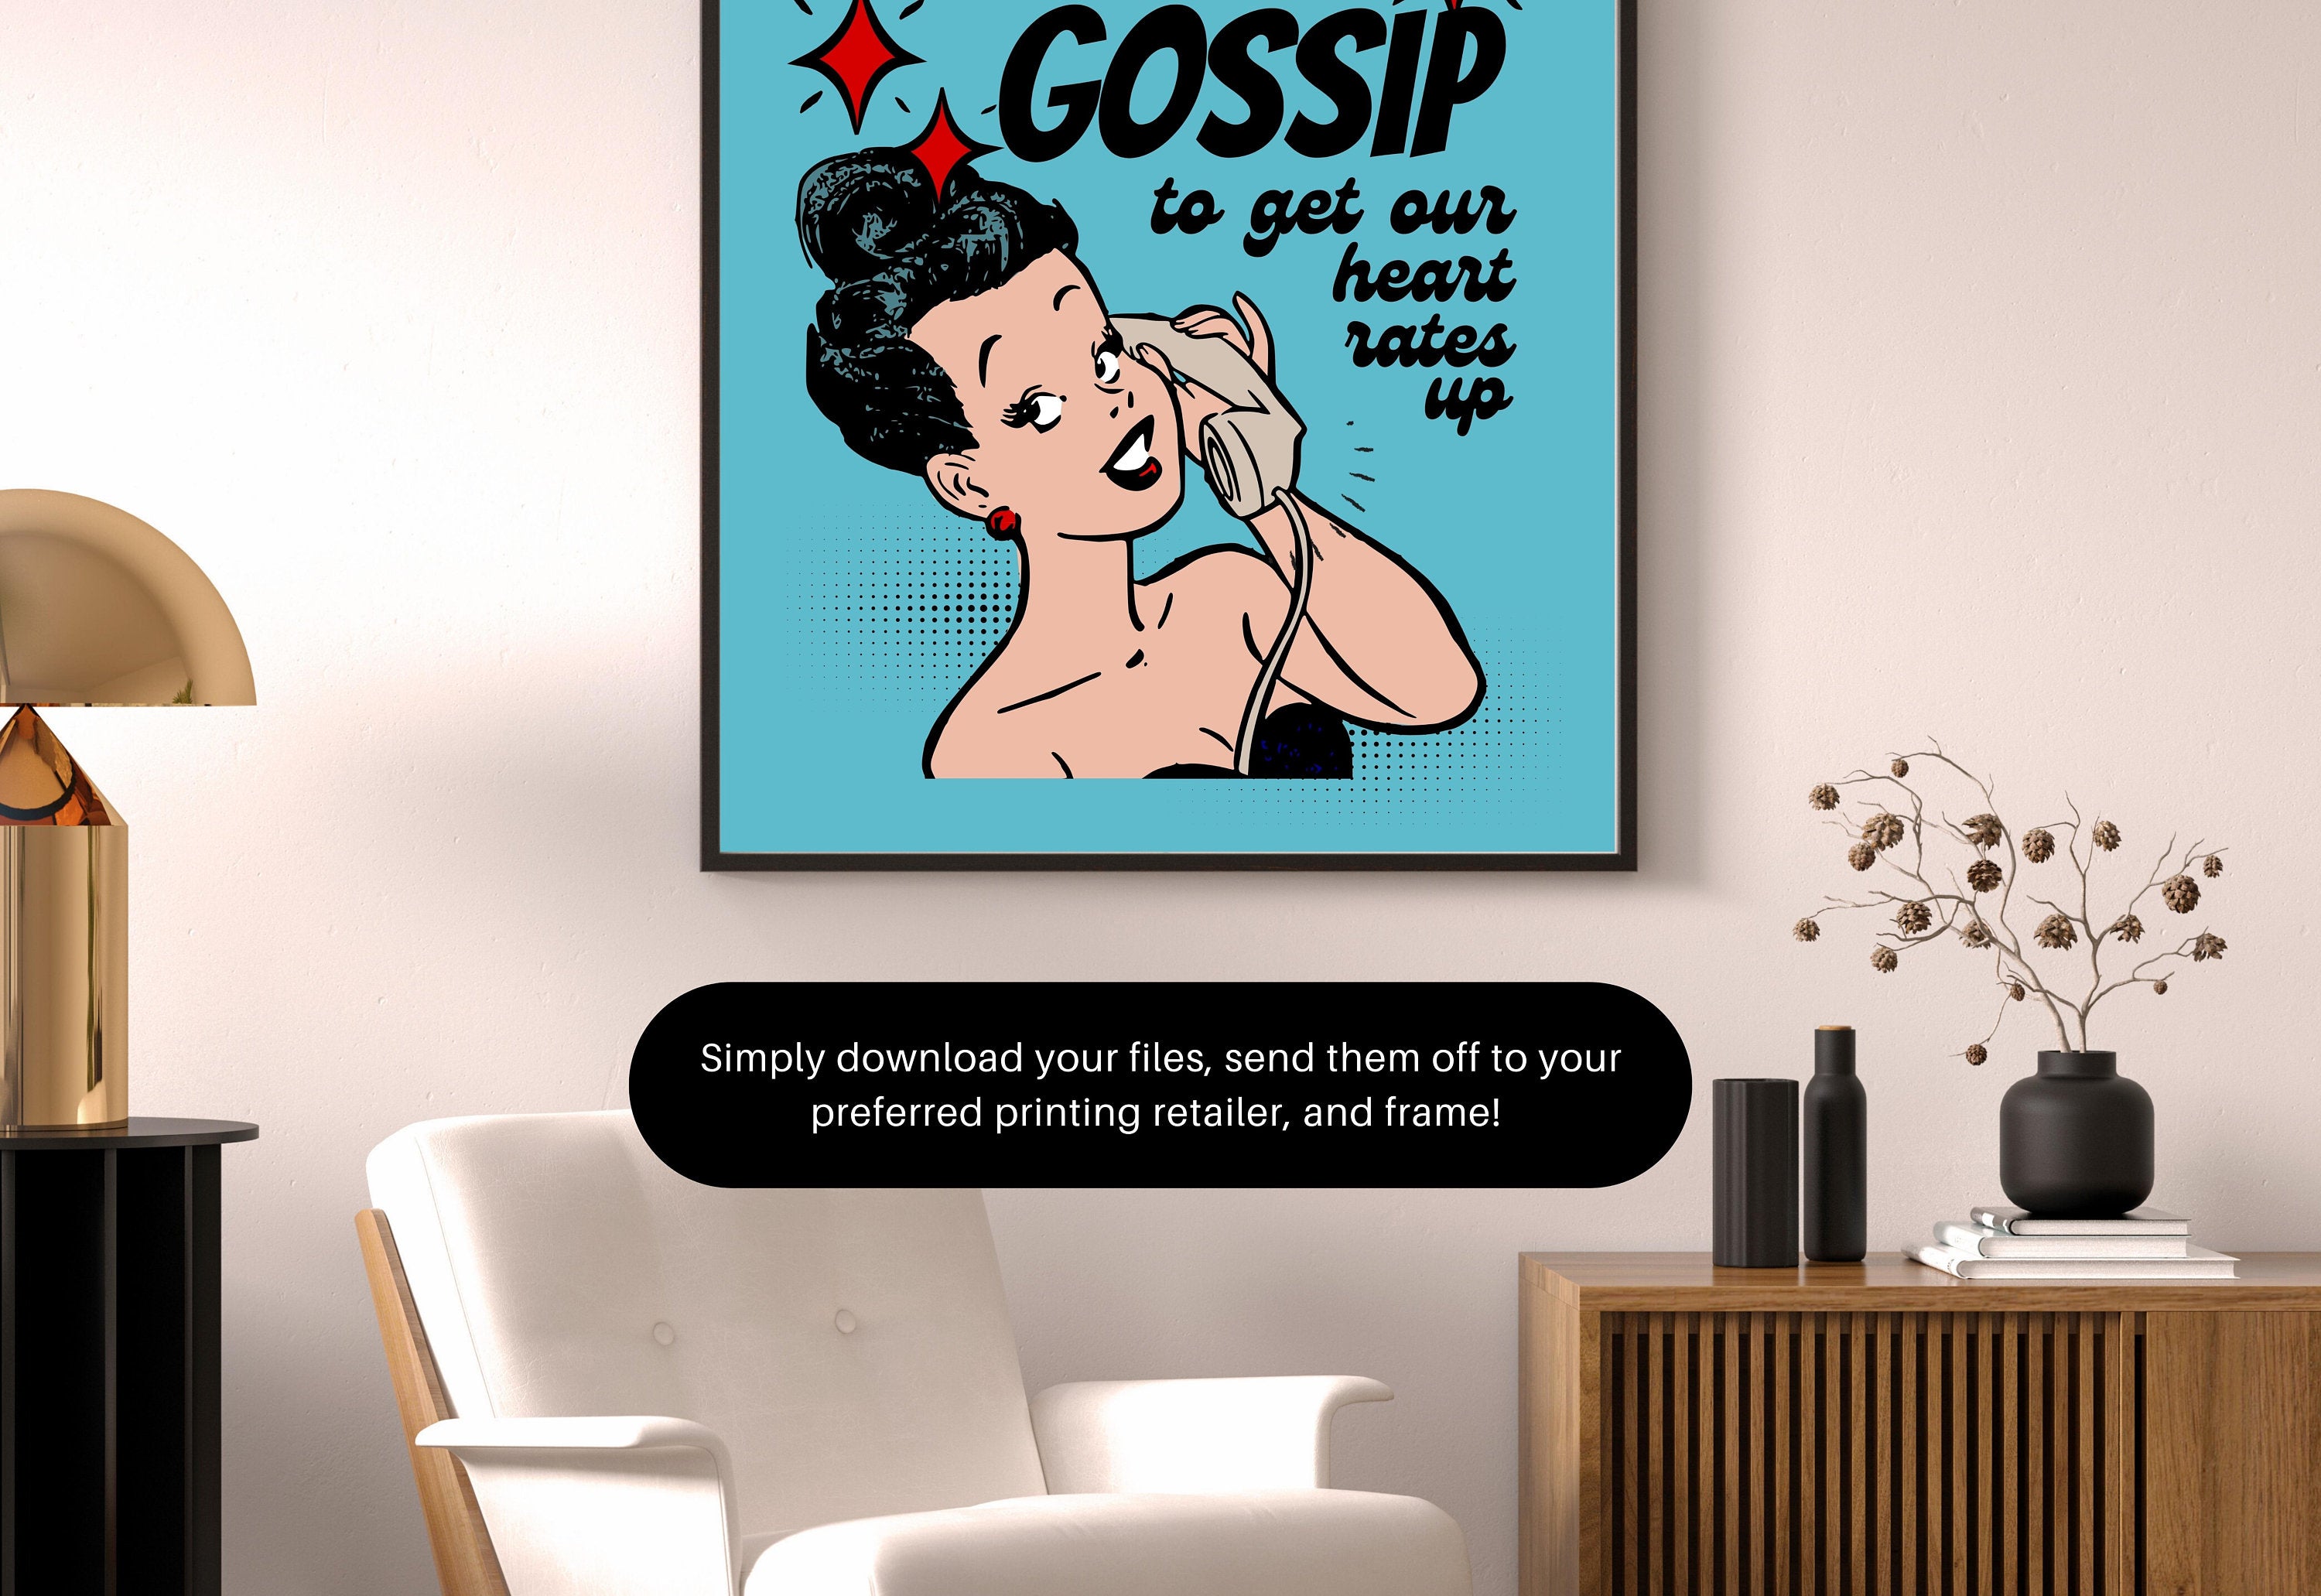 Let's Gossip-Digital Prints-Wall Art Print-Retro Cartoon Art-Downloadable Print-Bar Art Prints-Living Room Decor-Funny Wall Art-Bright Art